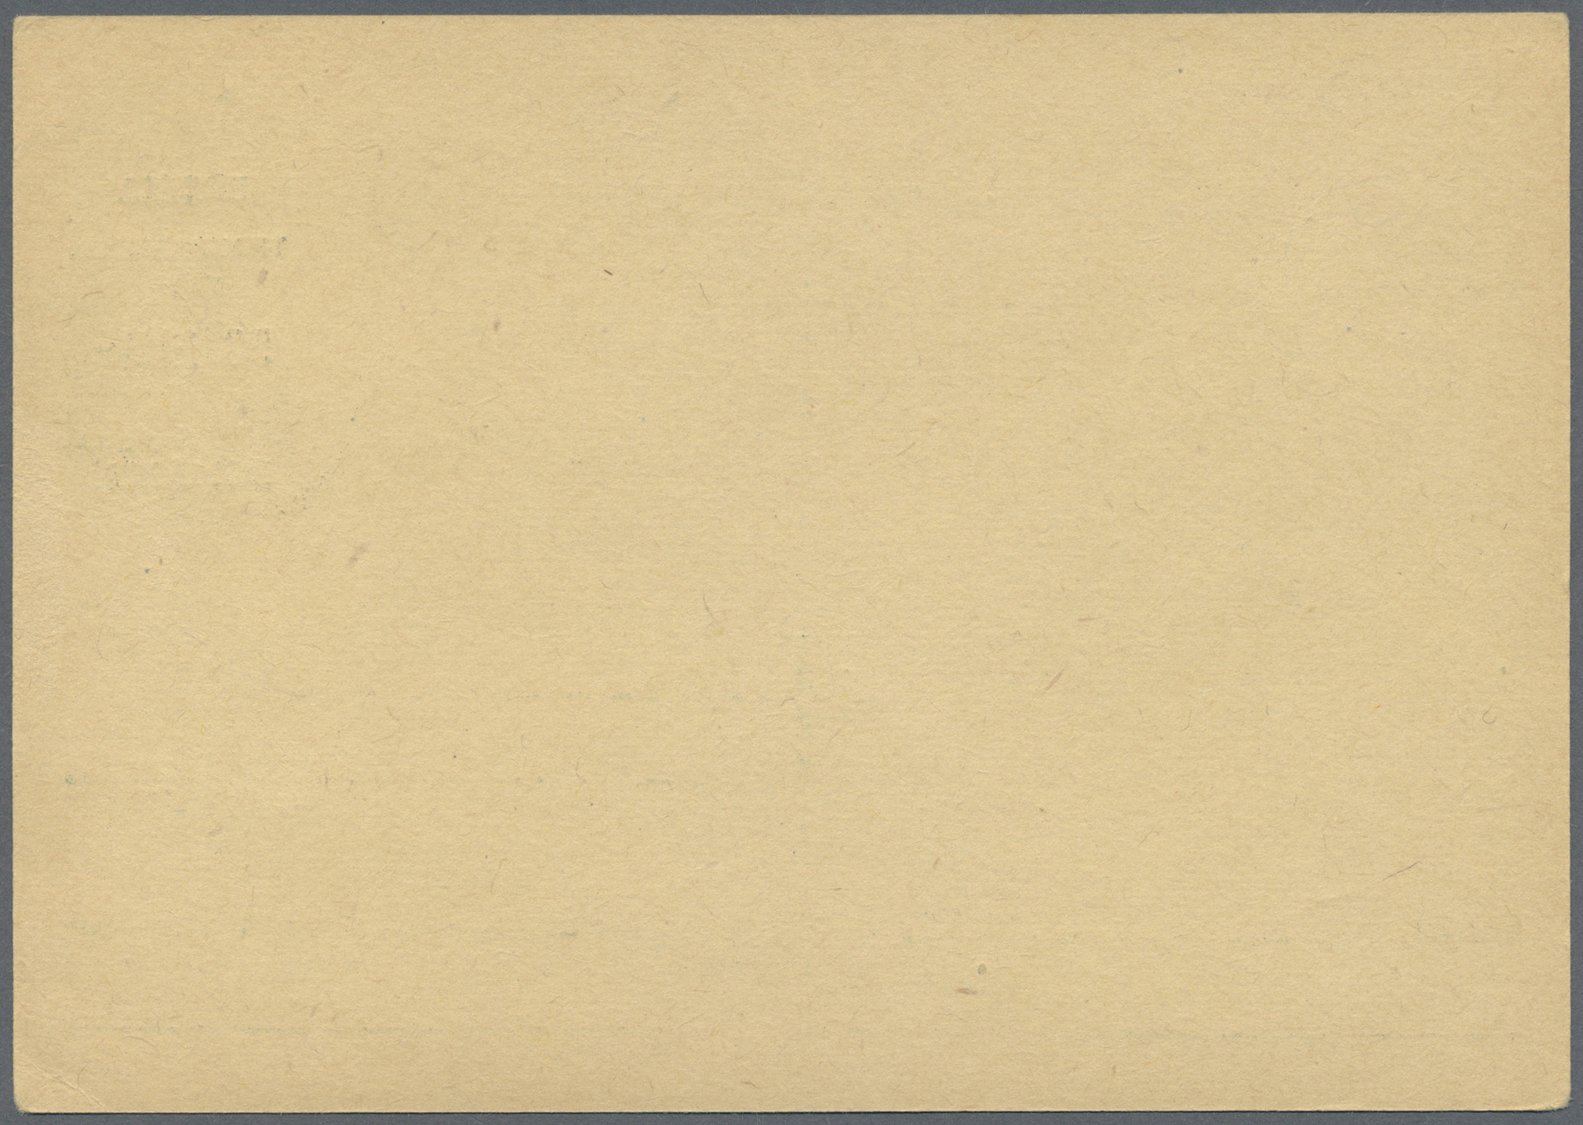 GA Ungarn - Ganzsachen: 1944, NORDSIEBENBÜRGEN, Hungarian 18 Filler Stat. Card Overprinted "ERDELY TRANSSILVANIA - Postal Stationery